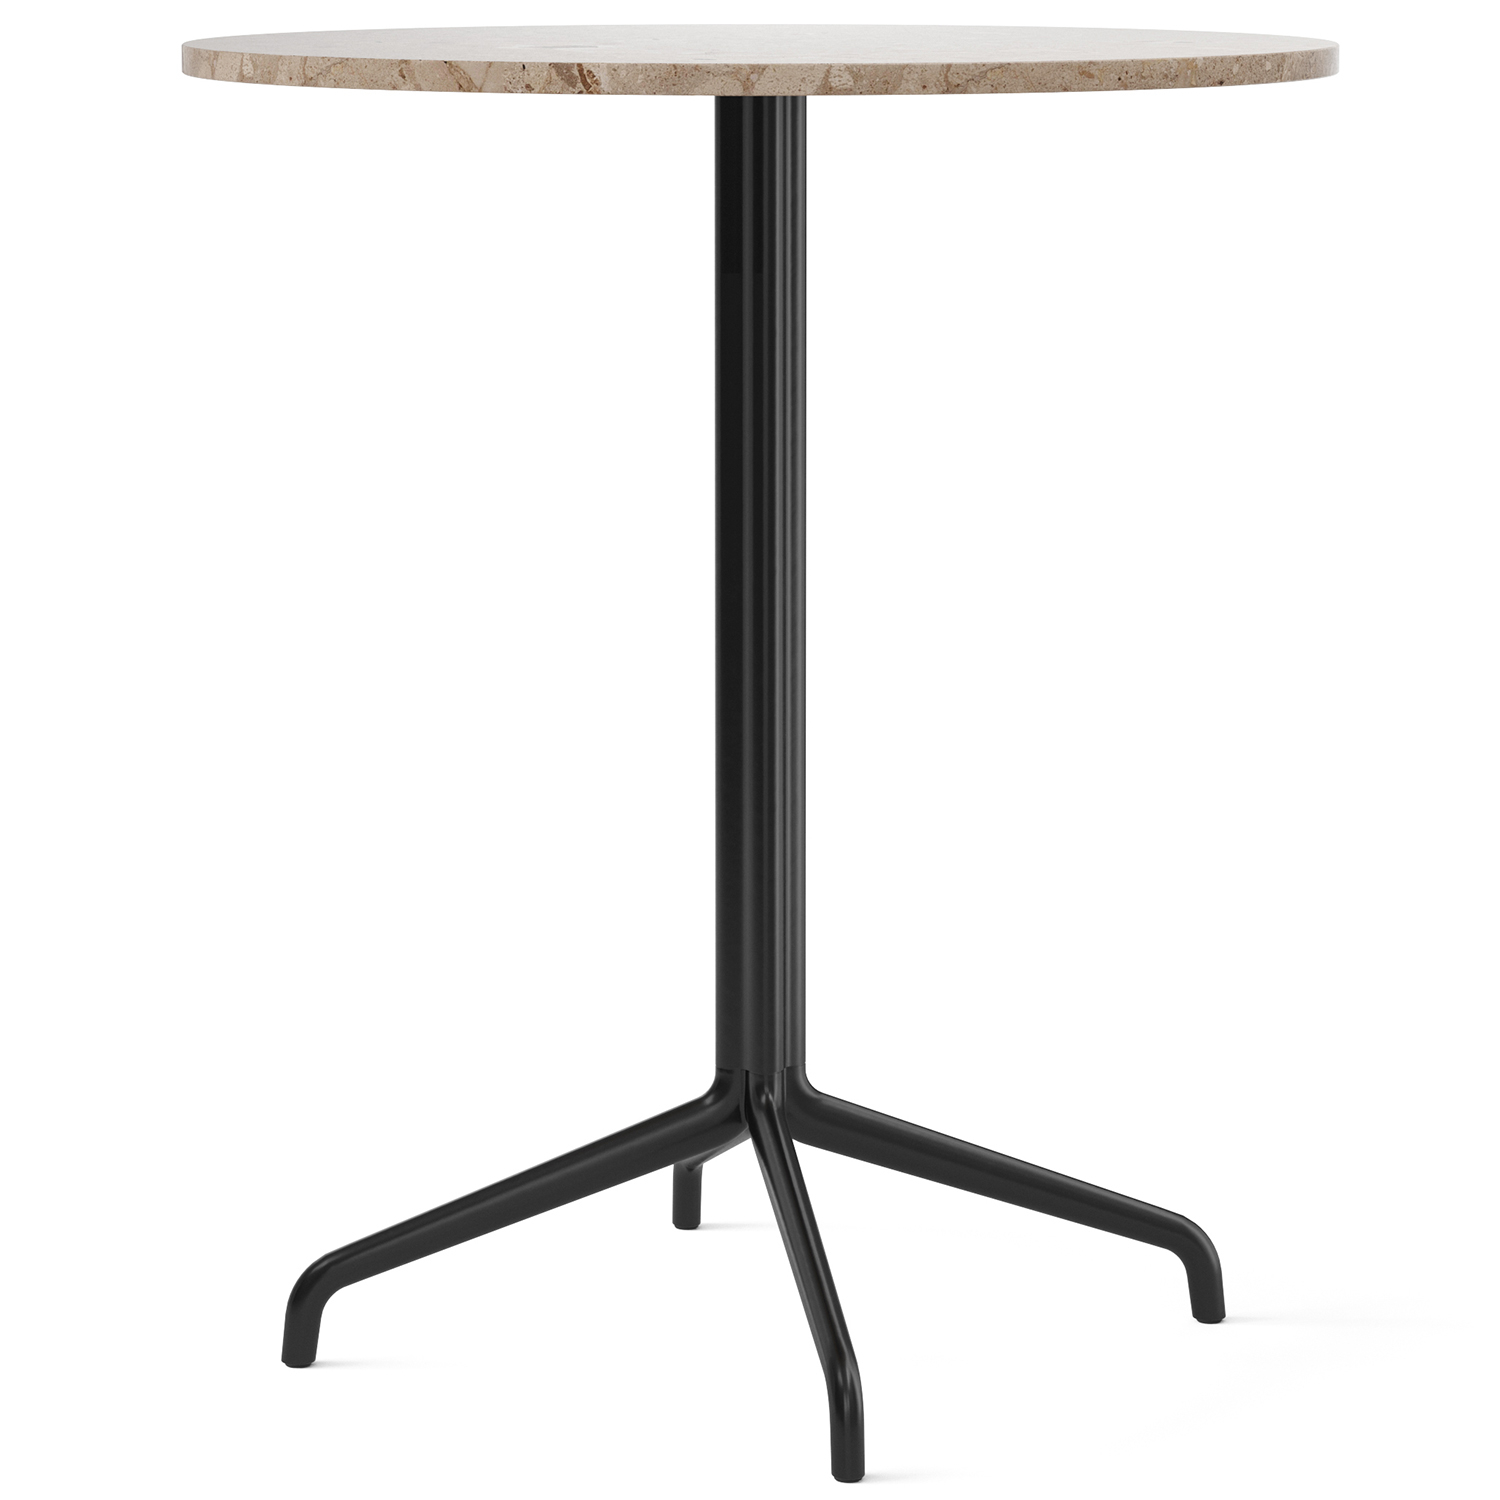 Menu designové kavárenské stoly Harbour Column Counter Table Star Base (průměr 80 cm)